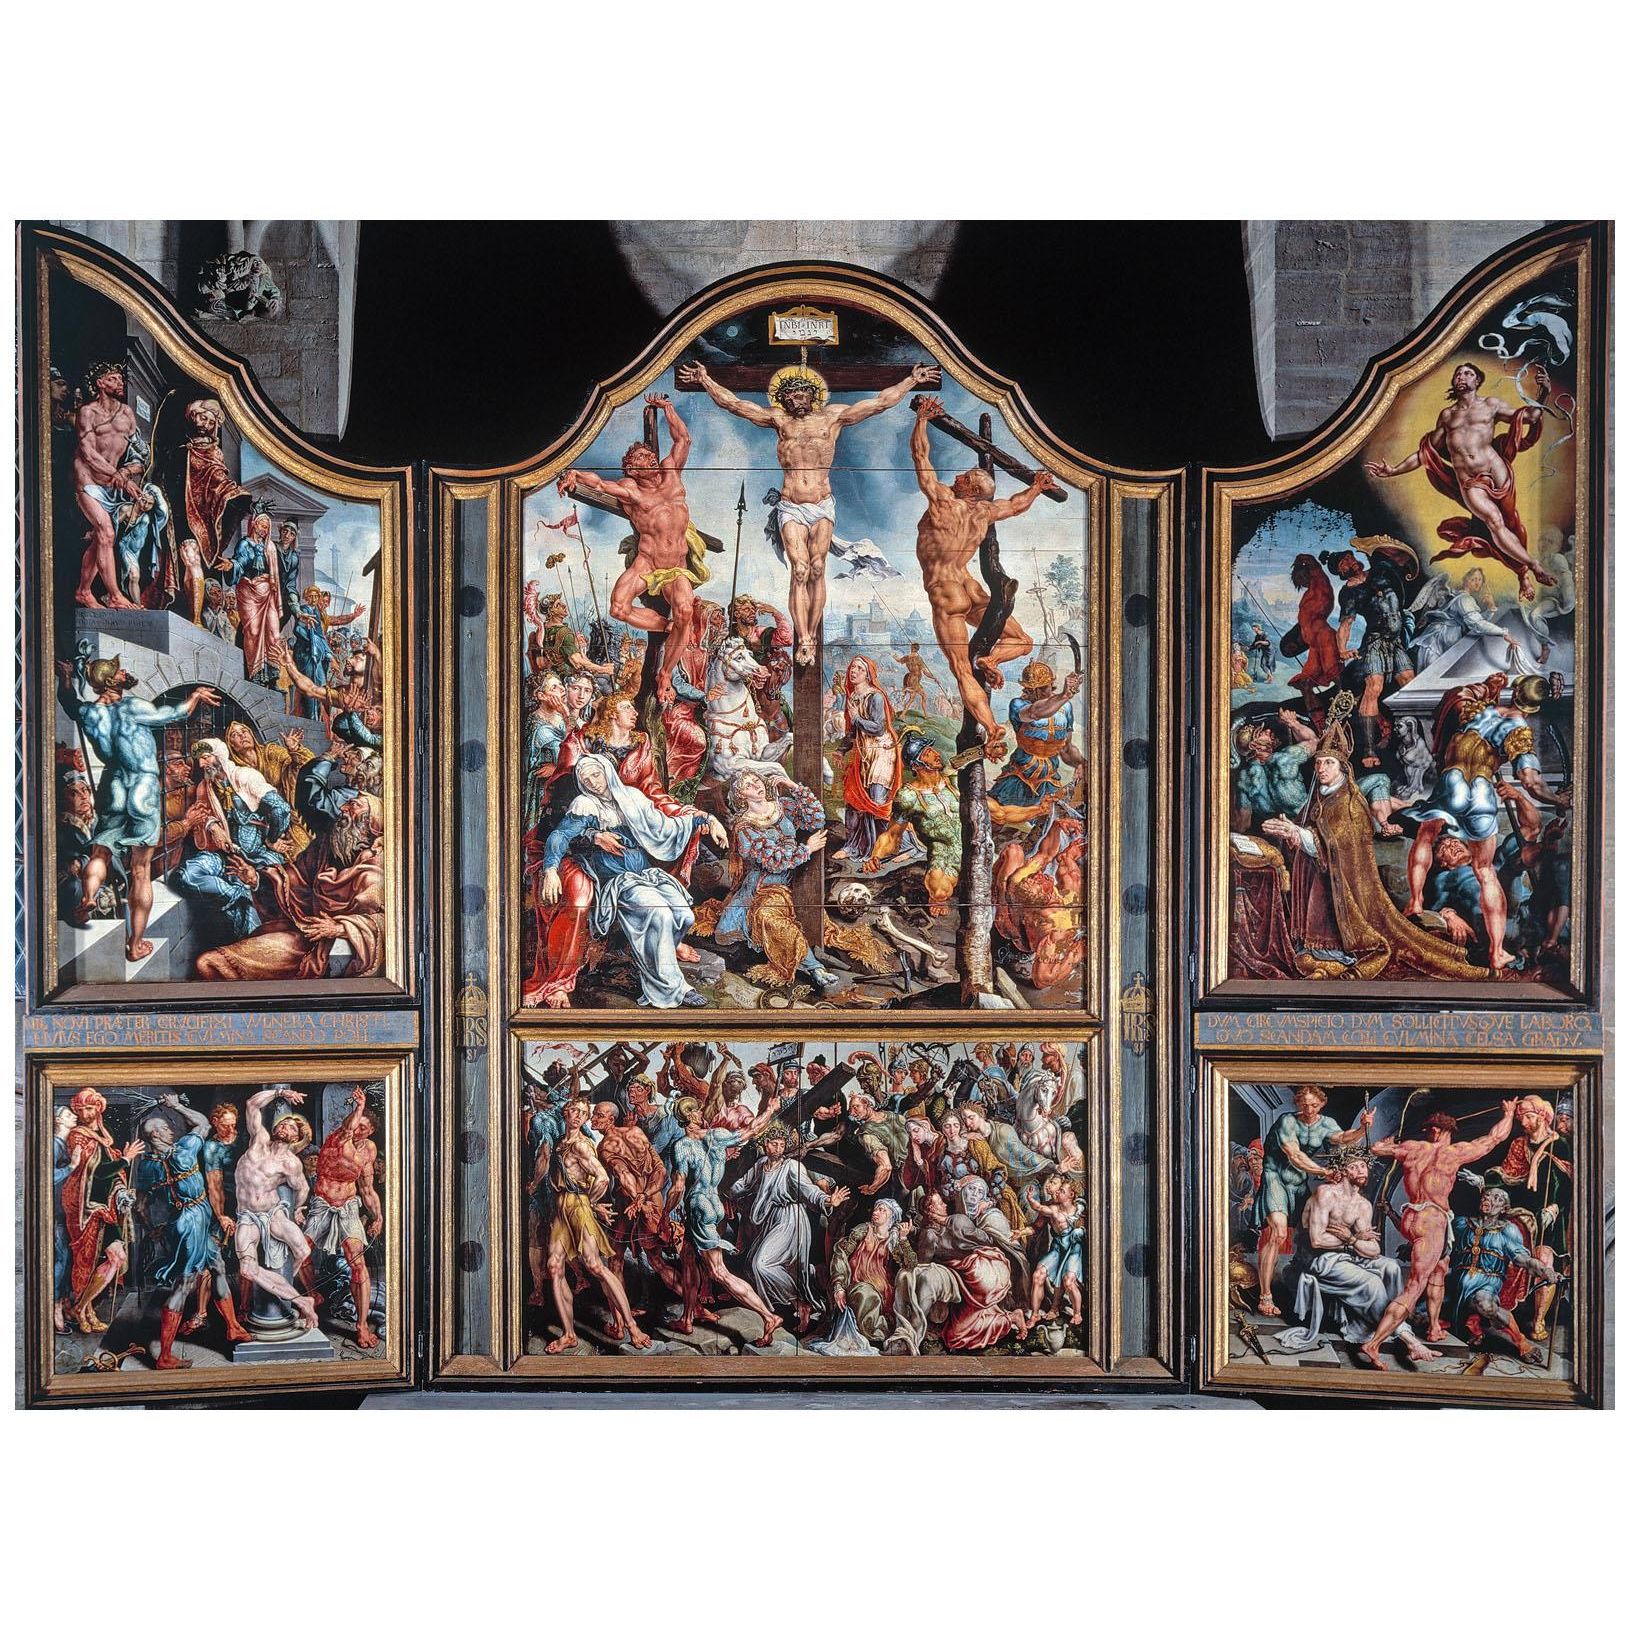 Maarten van Heemskerck. St. Lawrence Altarpiece. 1539-1543. Cathedral Linköping, Sweden